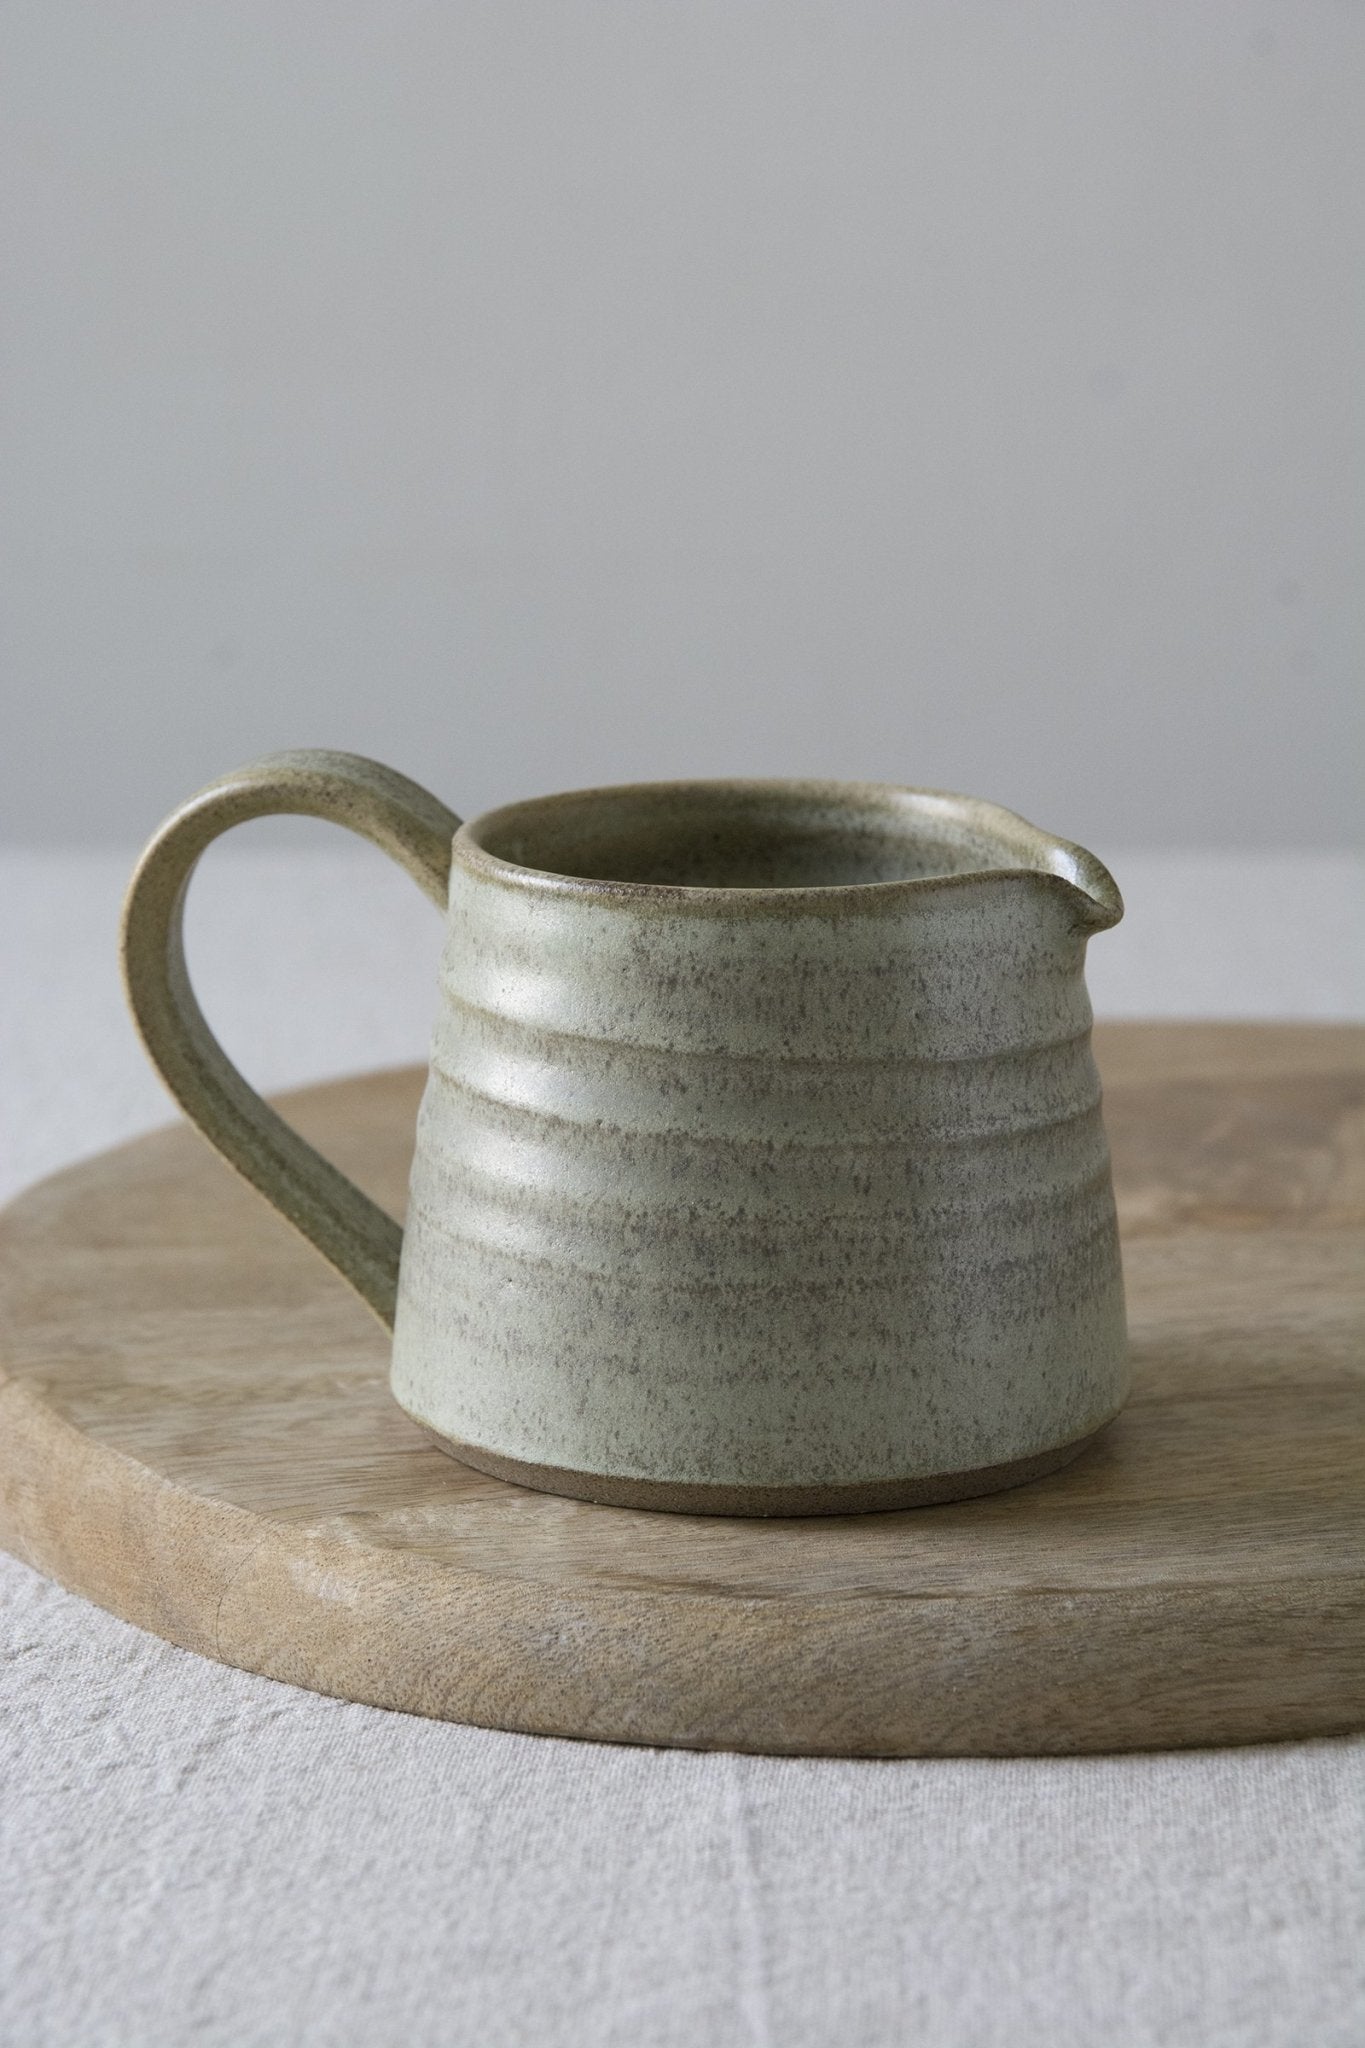 Green Sage Pottery Sugar Bowl and Creamer Set - Mad About Pottery - Sugar Bowl set